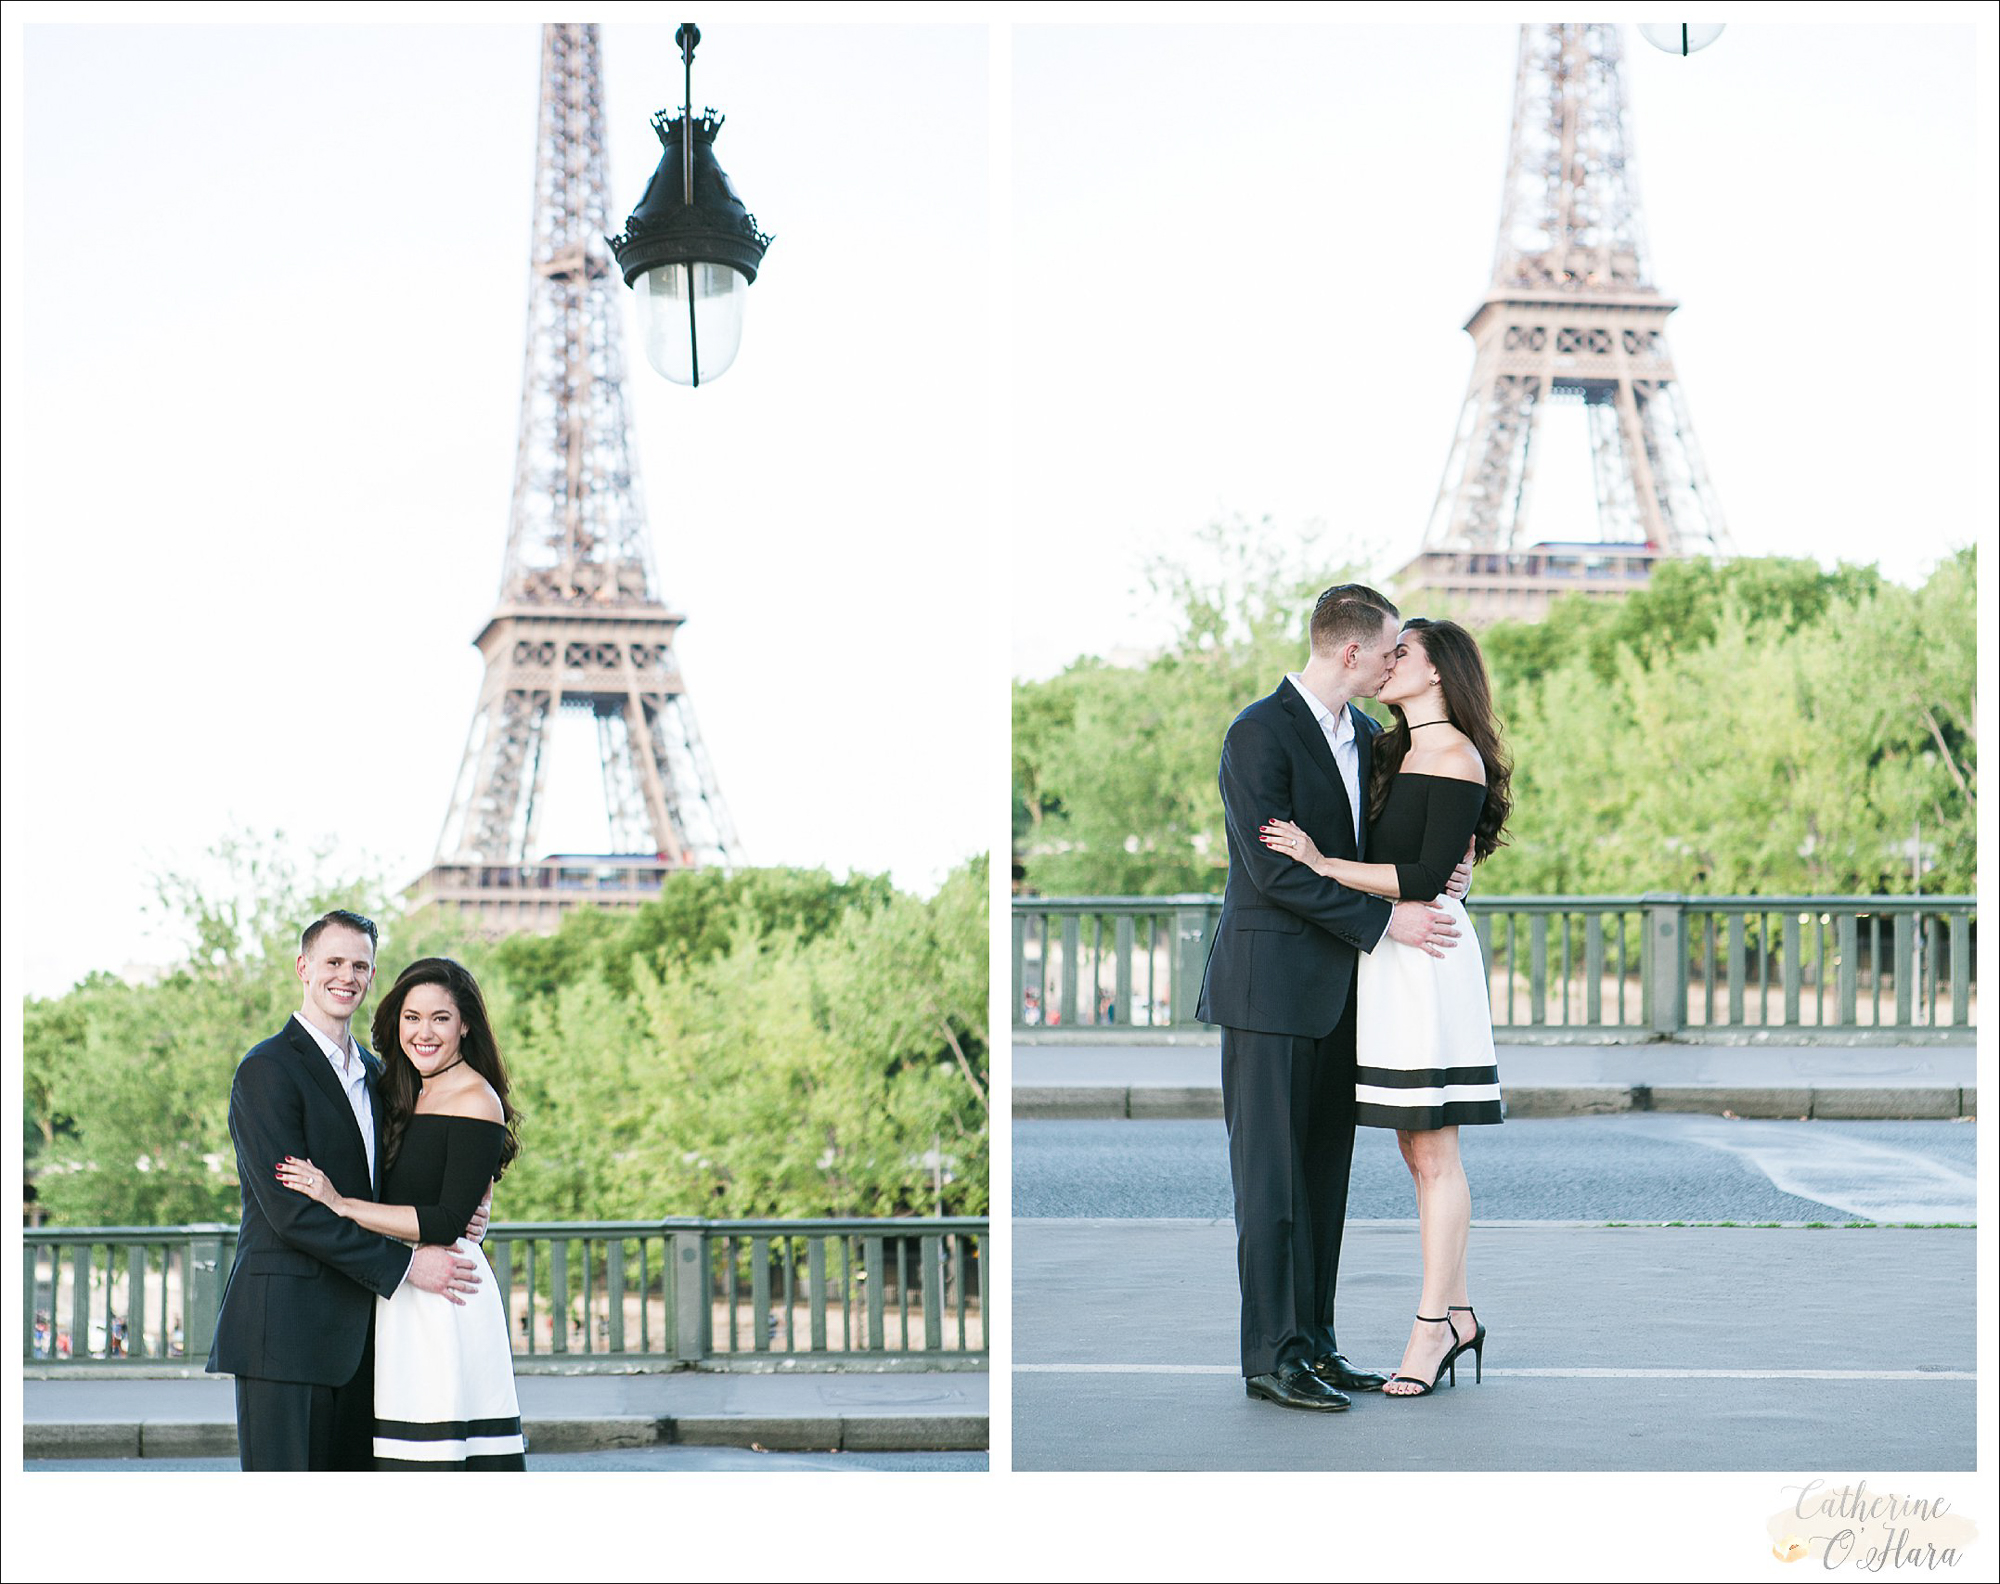 surprise proposal engagement photographer paris france-12.jpg